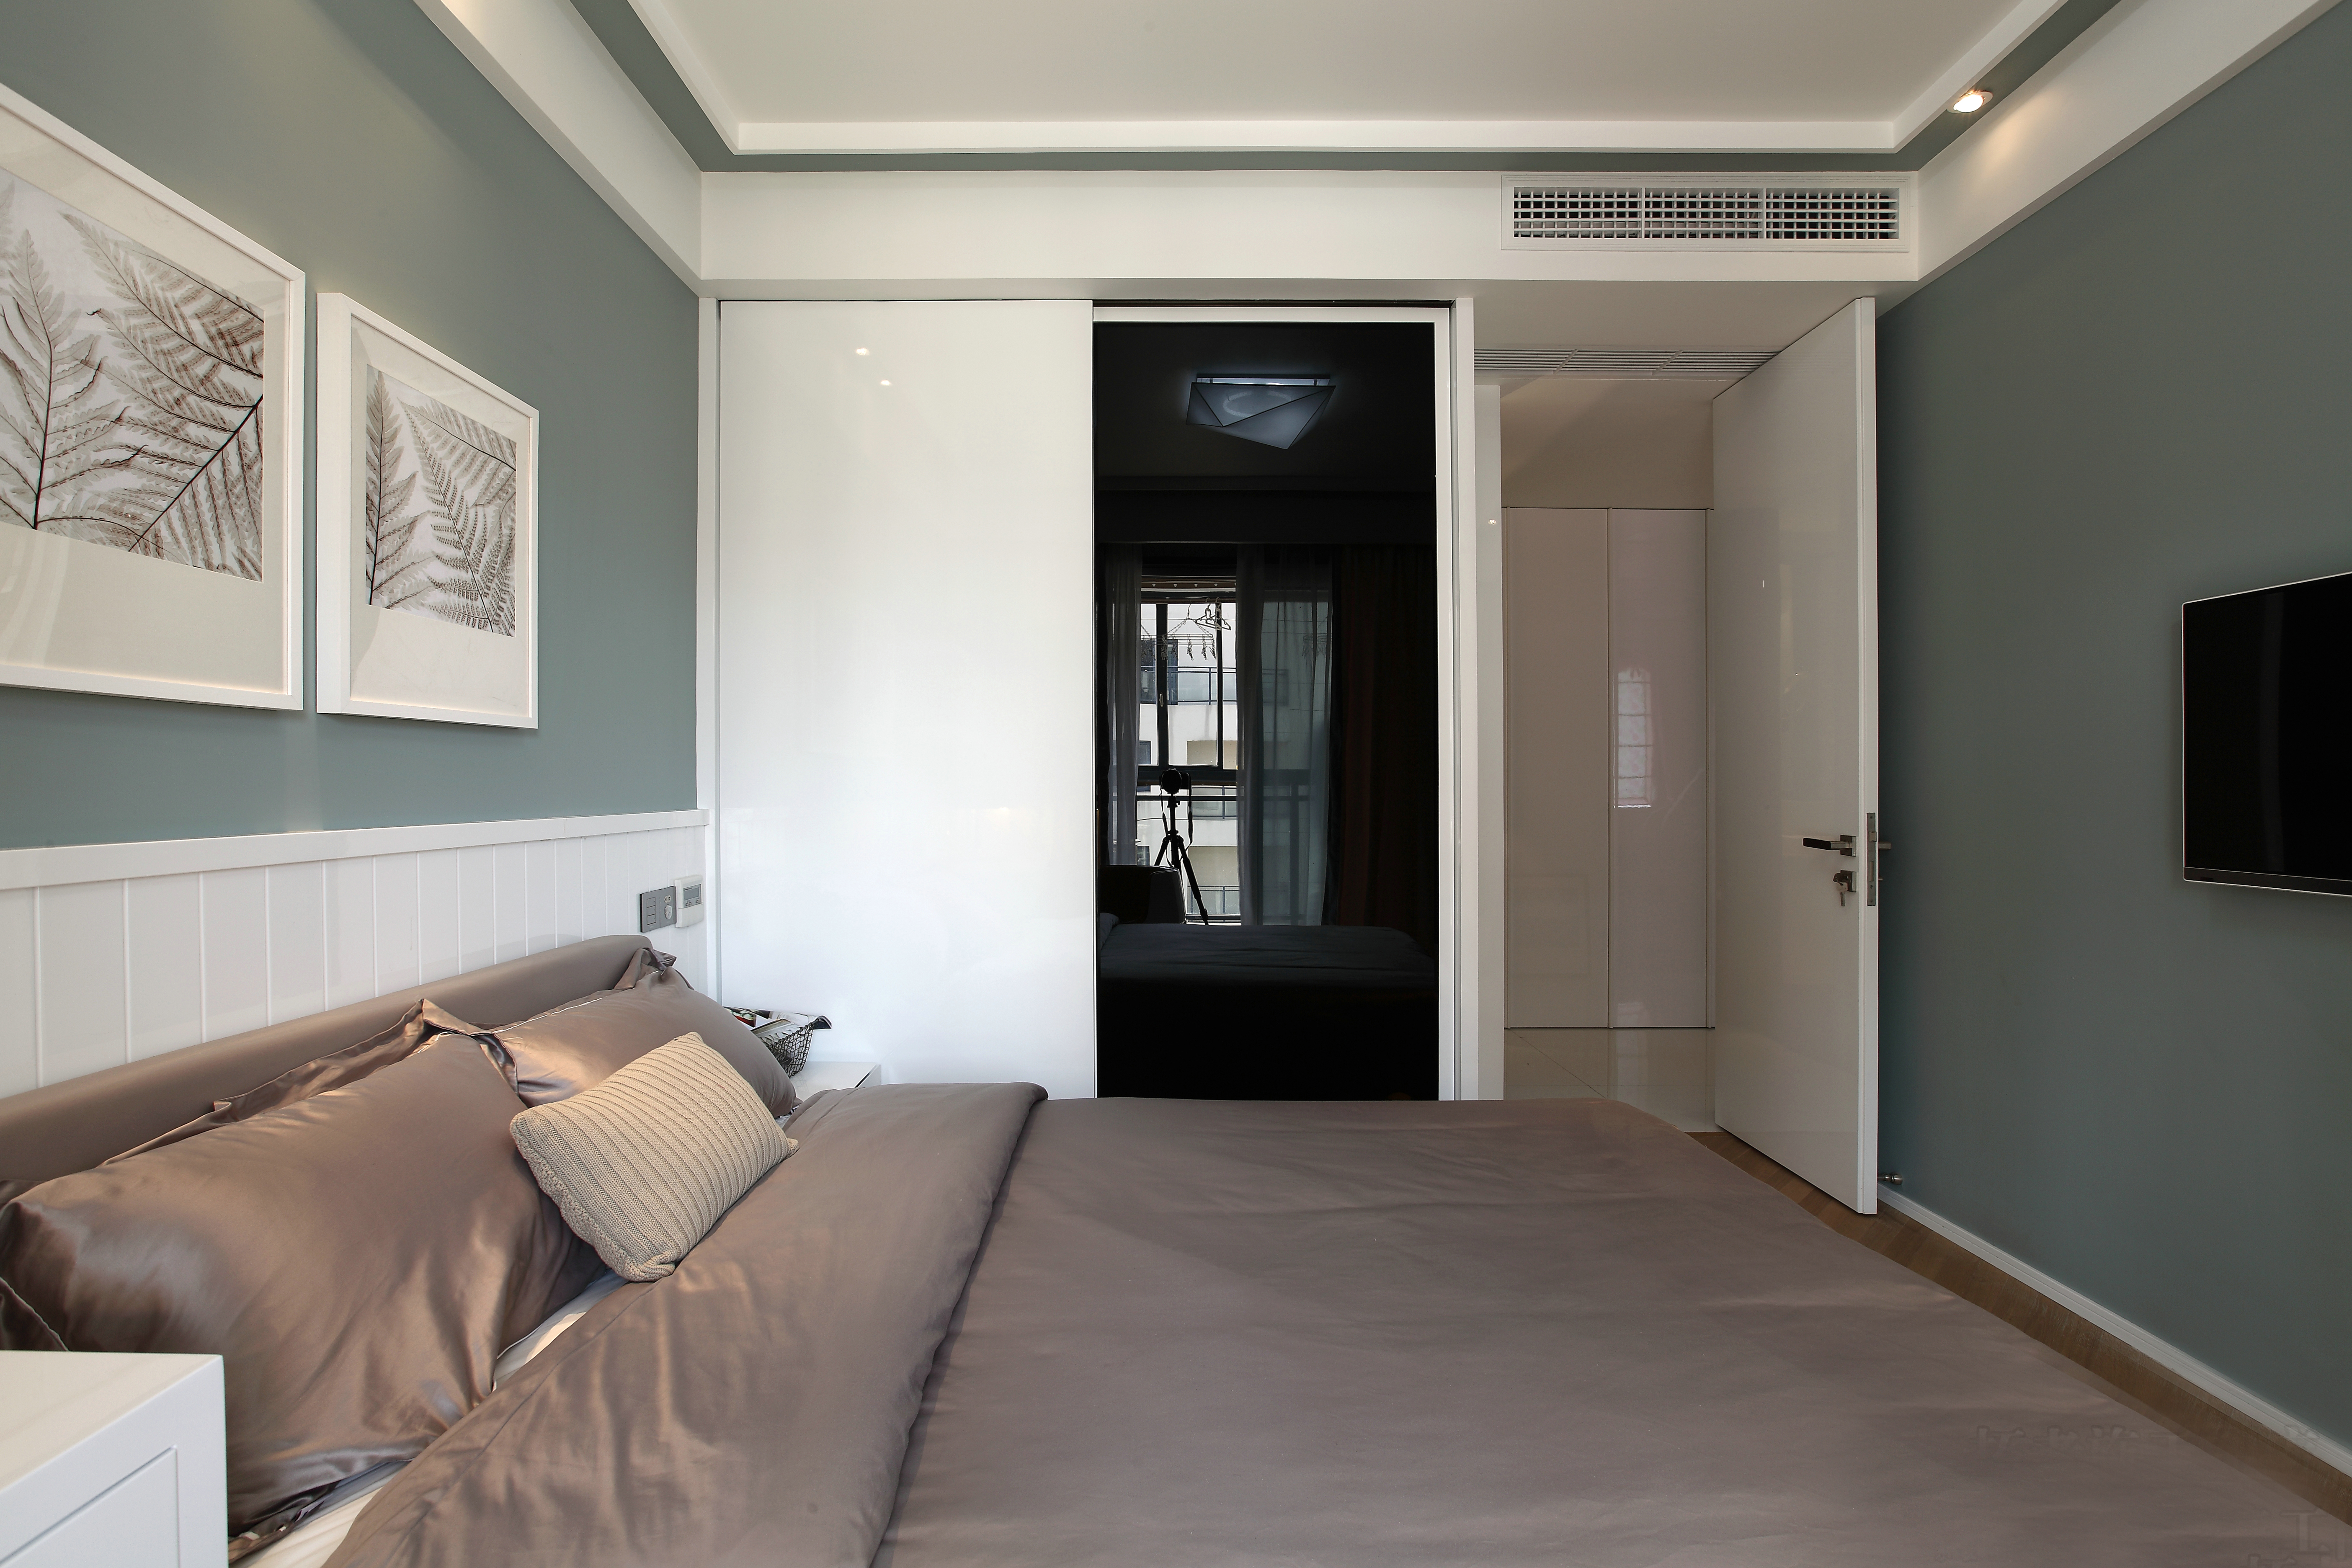 卧室墙面漆清新素雅，为睡眠提供了安适的氛围。